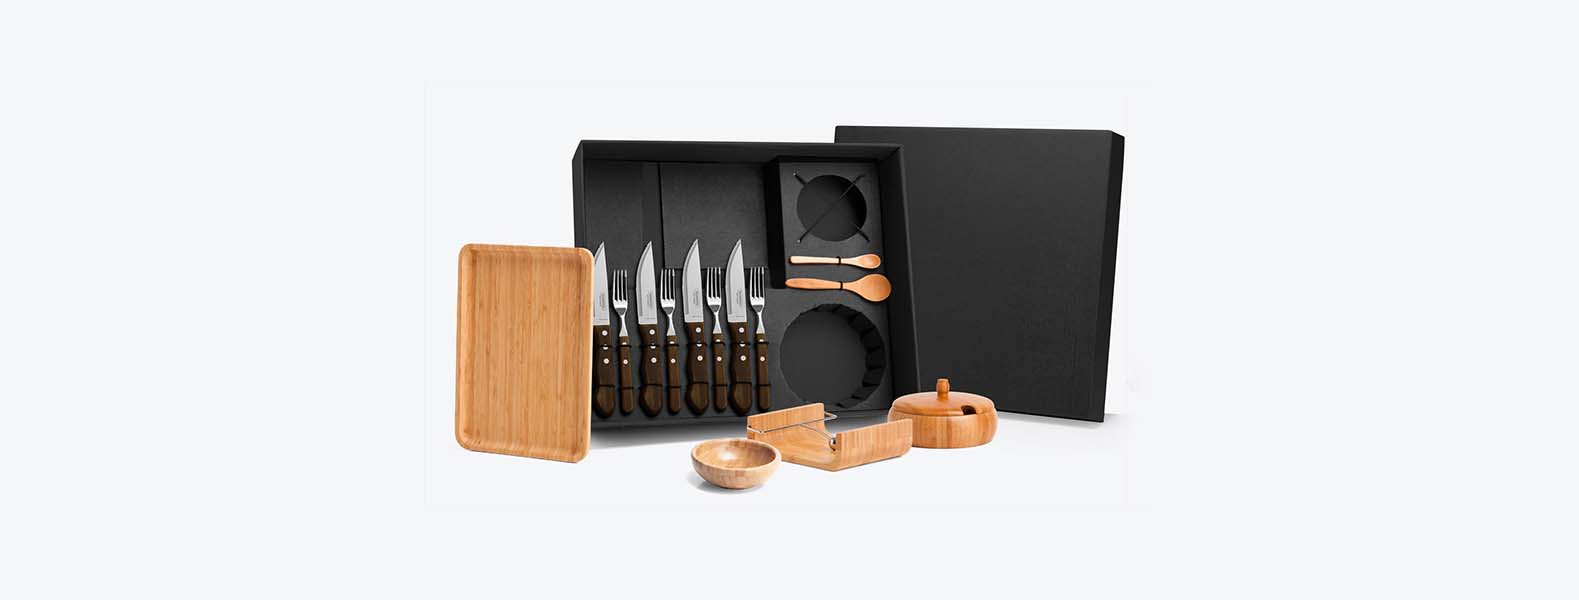 Kit para churrasco; Conta com bandeja, farinheira, cumbuca, colher e porta guardanapo em Bambu; 4 facas jumbo e 4 garfos em Inox/Polywood.